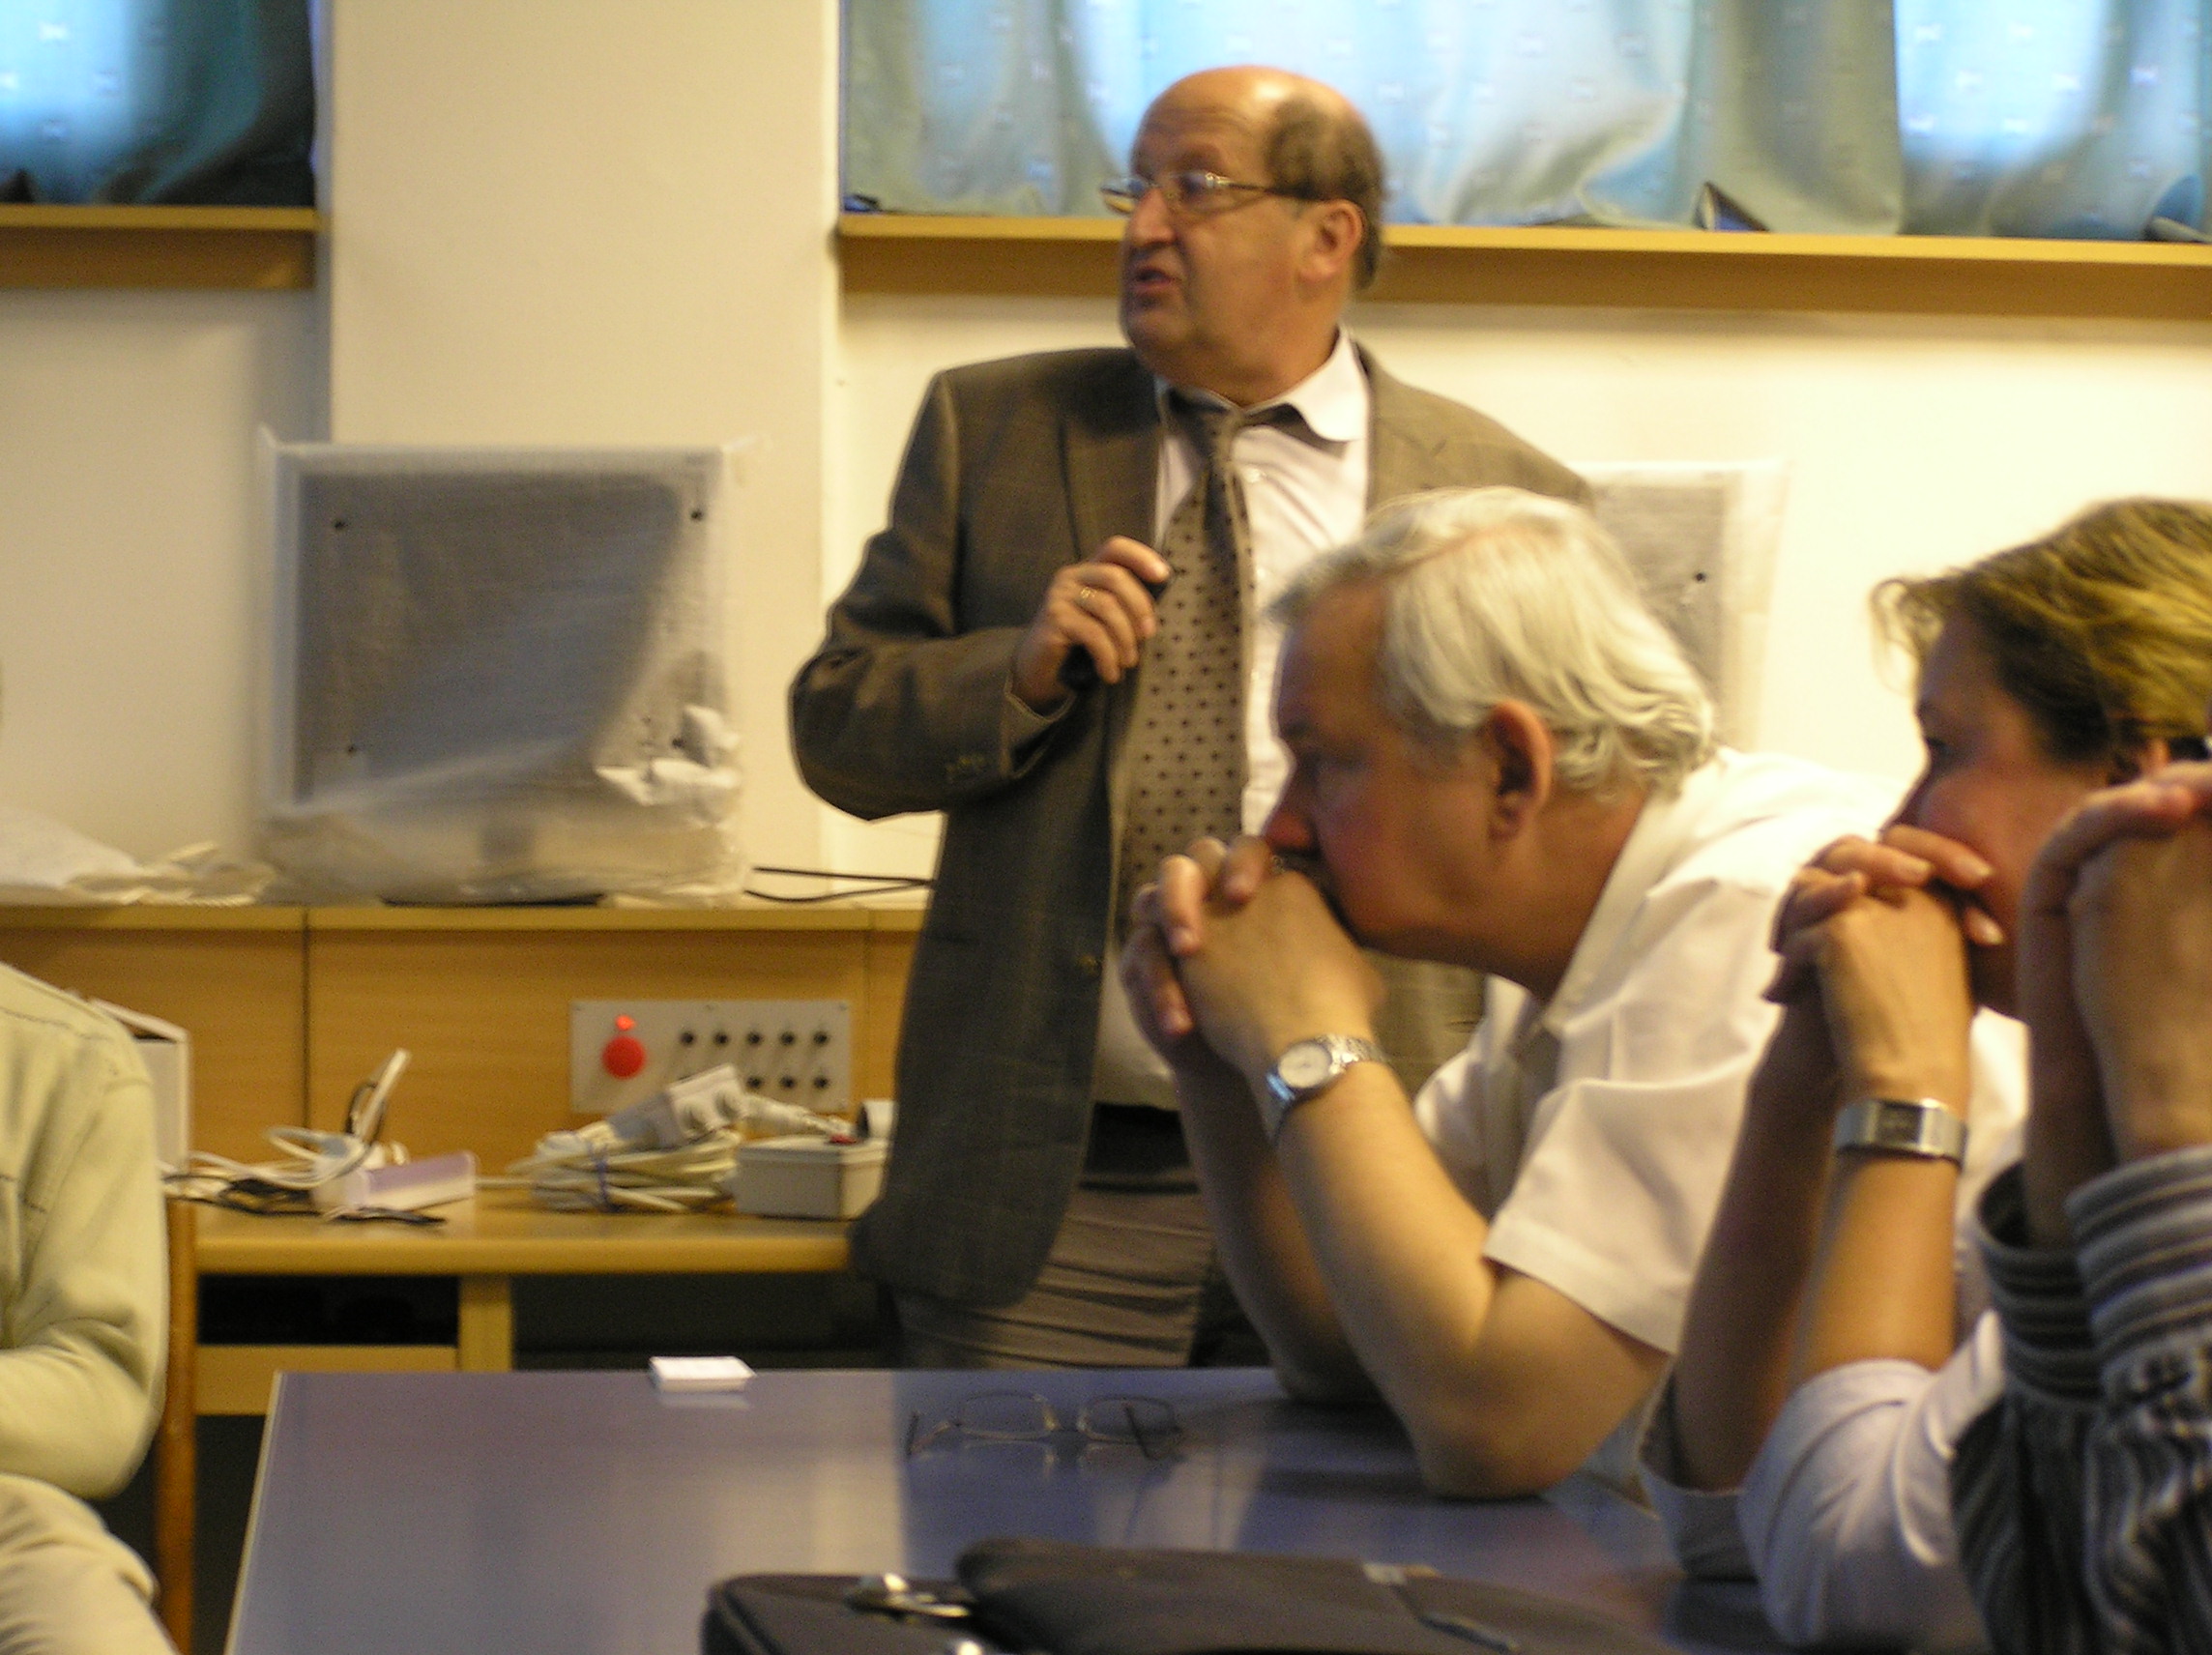 Az előadó munka közben - Görög tanár úr elmélyülten figyel